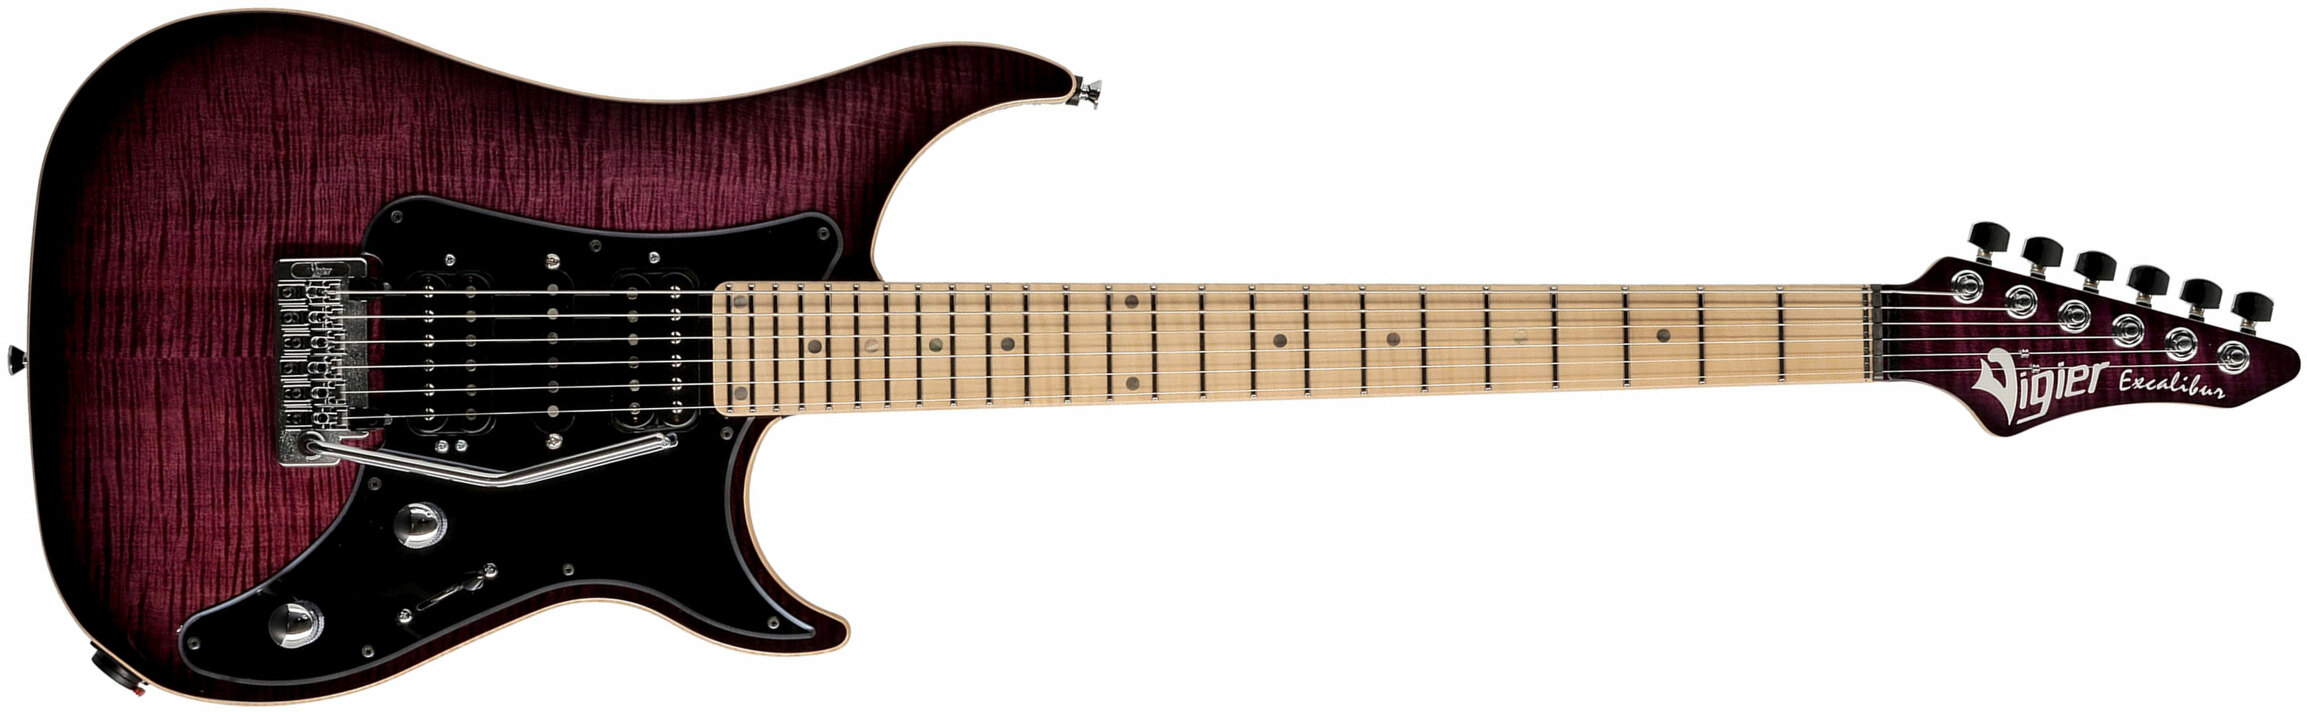 Vigier Excalibur Special Hsh Trem Mn - Mysterious Purple - Guitarra eléctrica de doble corte. - Main picture